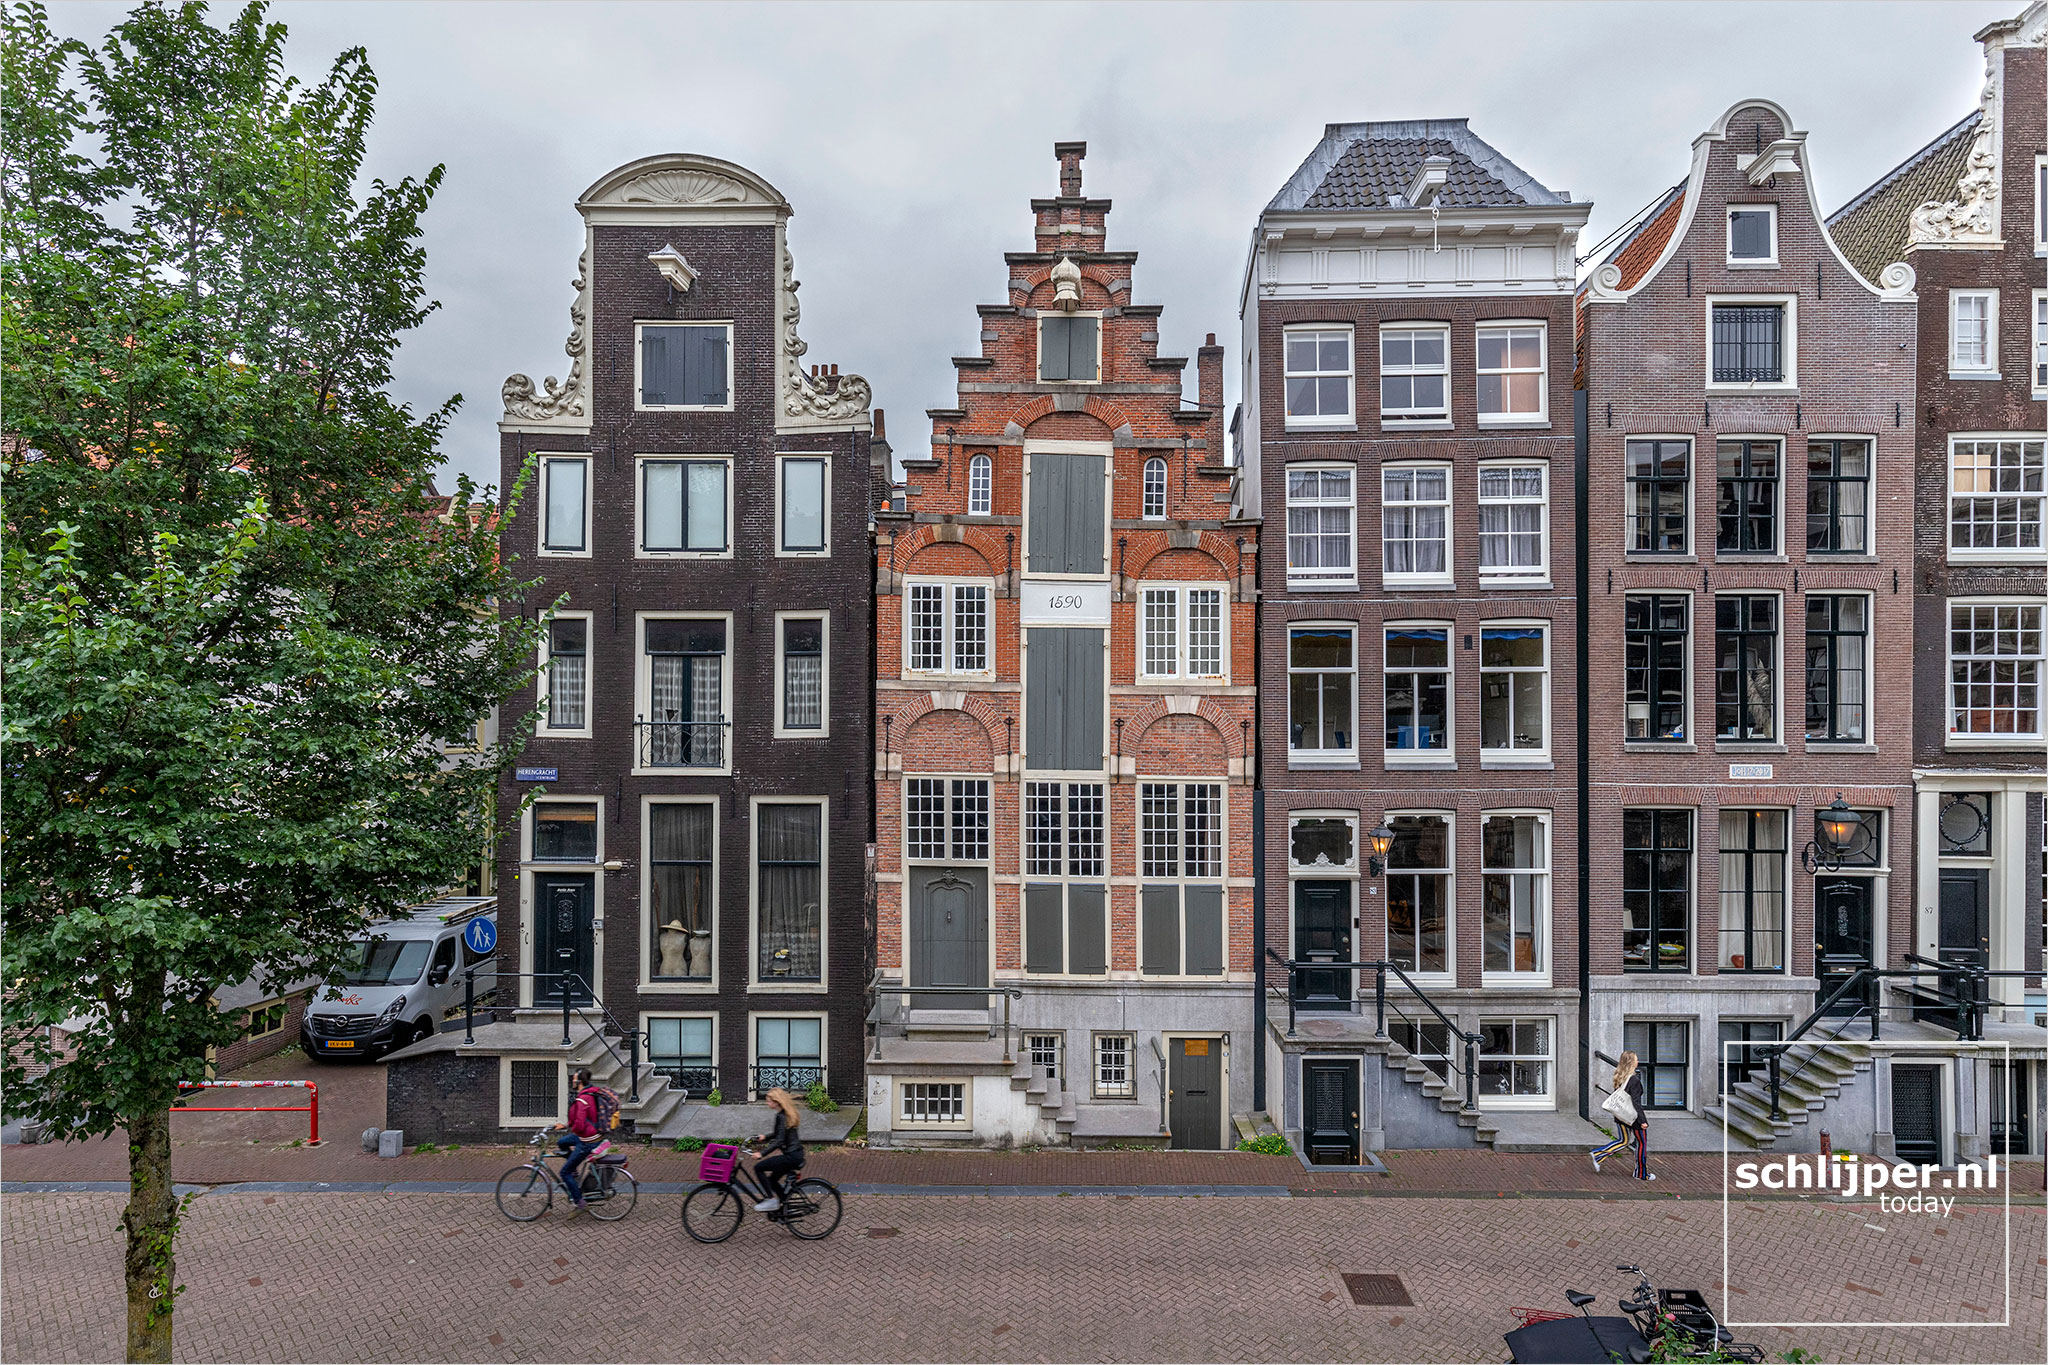 The Netherlands, Amsterdam, 2 september 2021